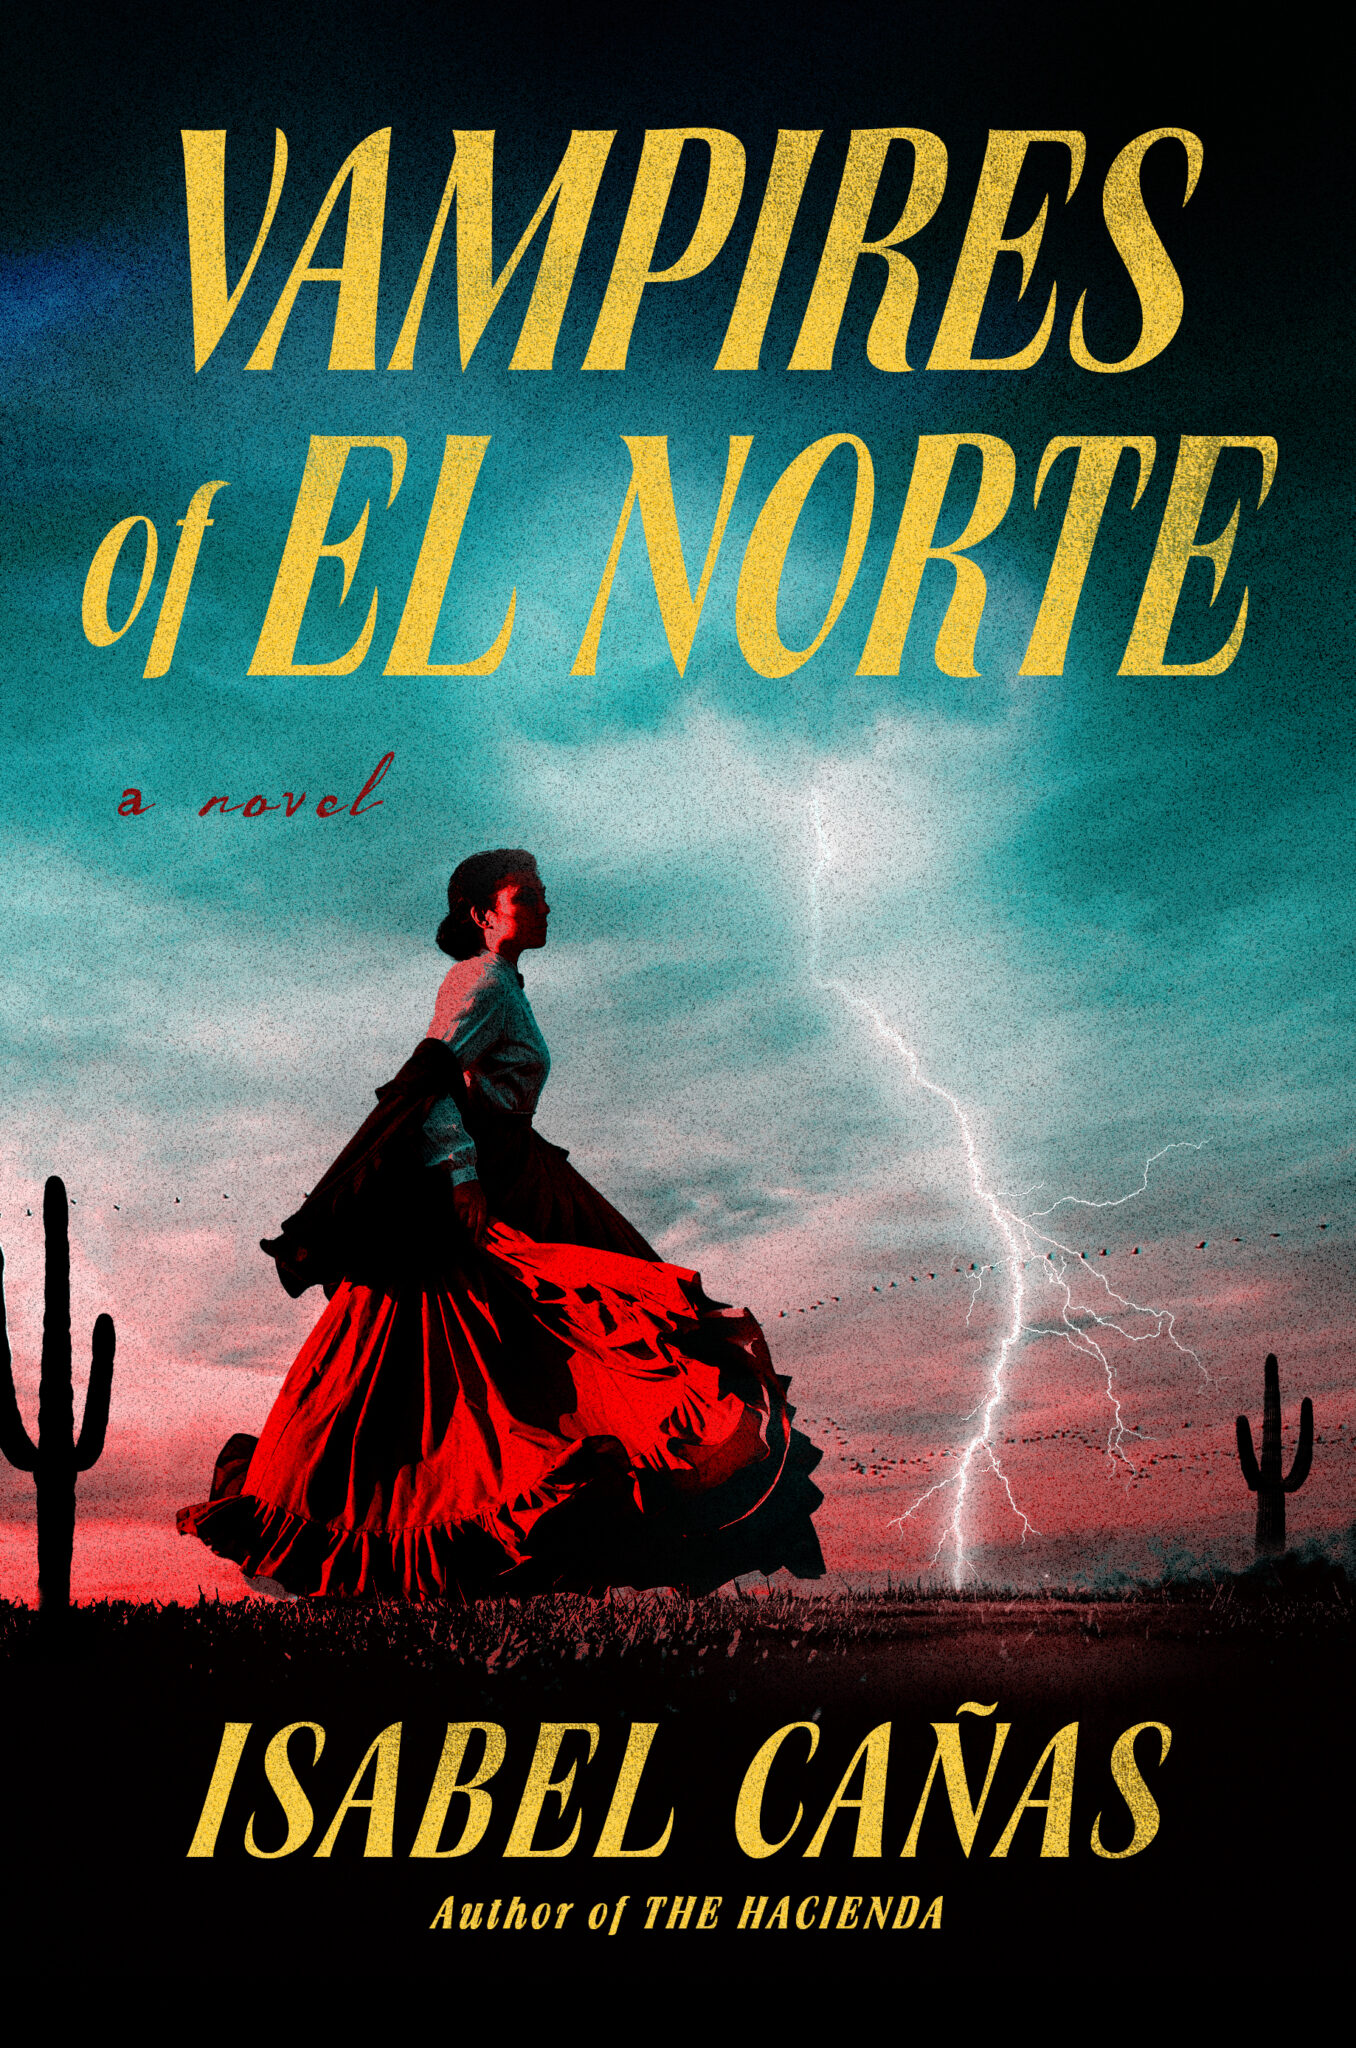 "Vampires of El Norte" by Isabel Cañas